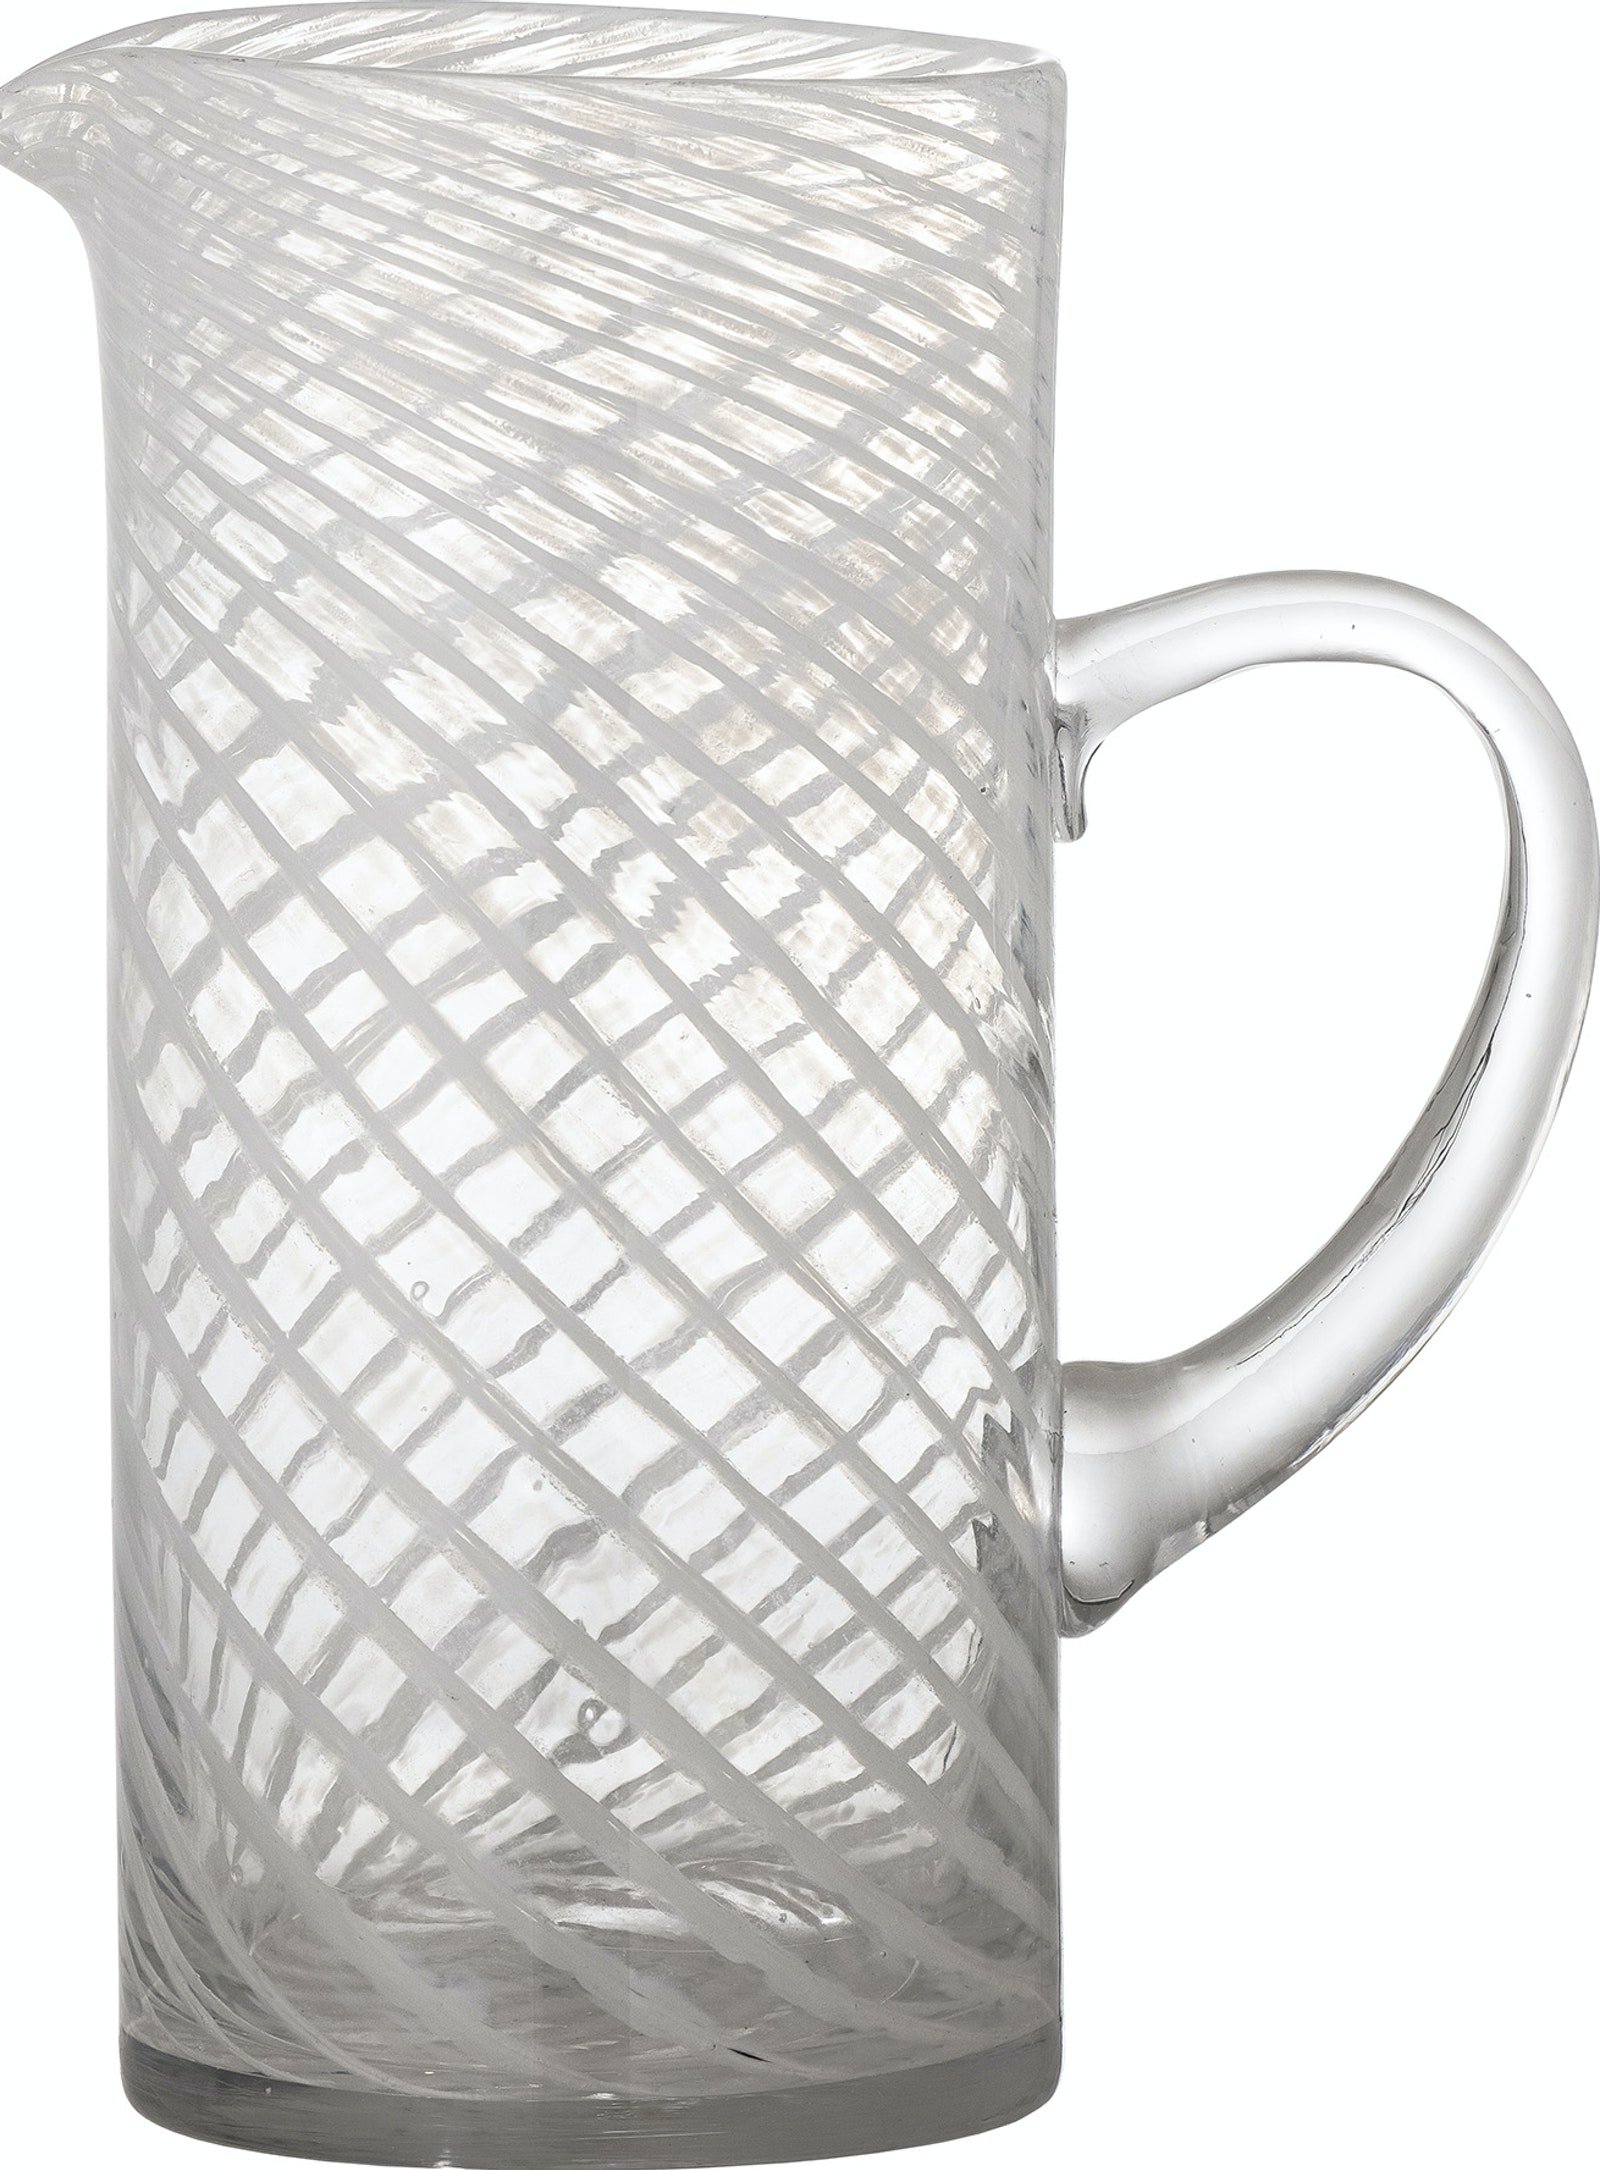 5: Sakhi, Kande, Glas by Bloomingville (H: 26 cm. x B: 12 cm. x L: 21 cm., Hvid)